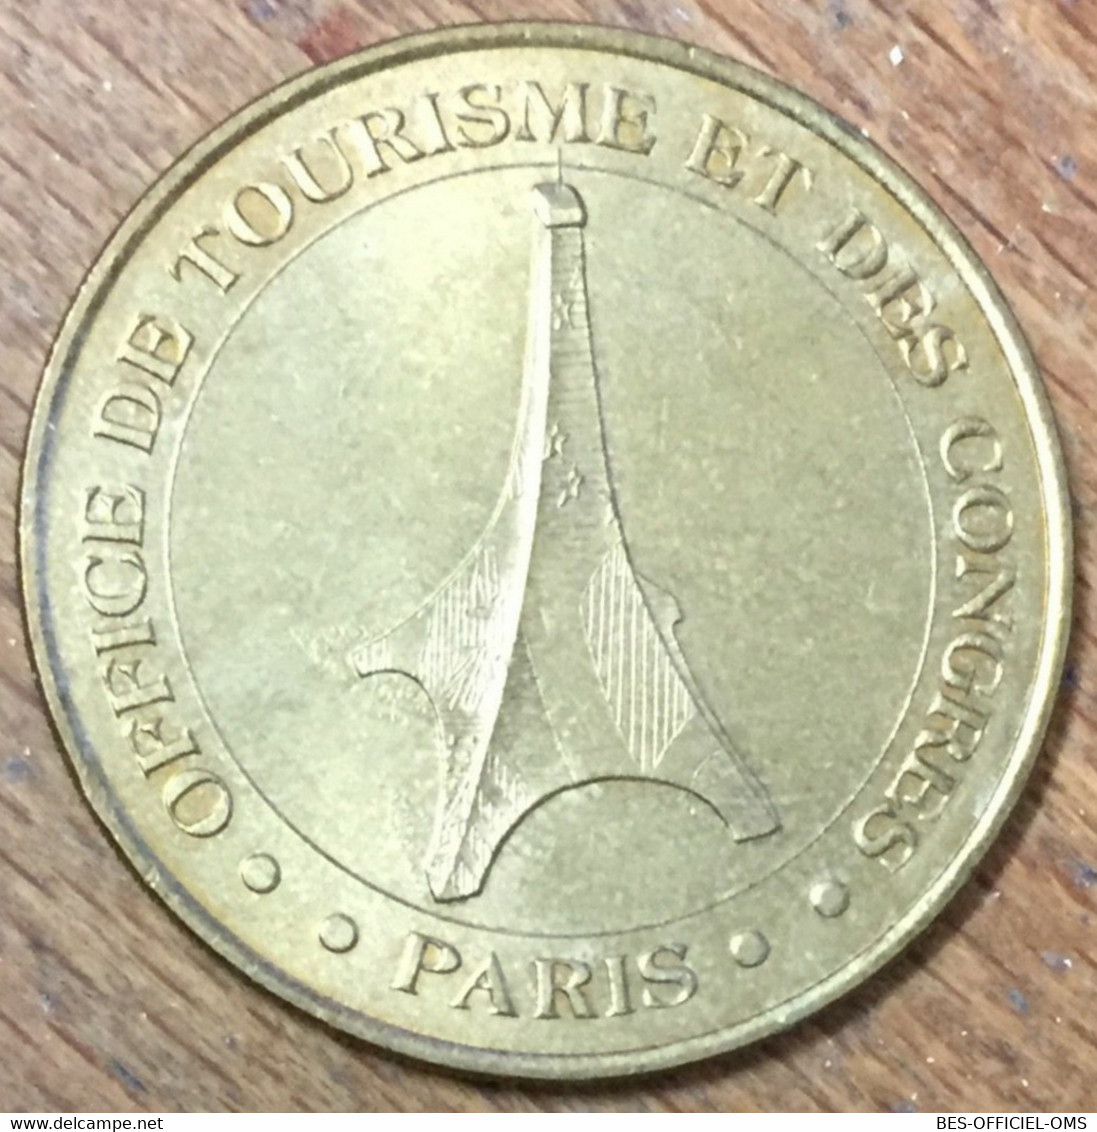 75001 PARIS TOUR EIFFEL OFFICE DU TOURISME MDP 2001 MÉDAILLE MONNAIE DE PARIS JETON TOURISTIQUE TOKEN MEDALS COINS - 2001